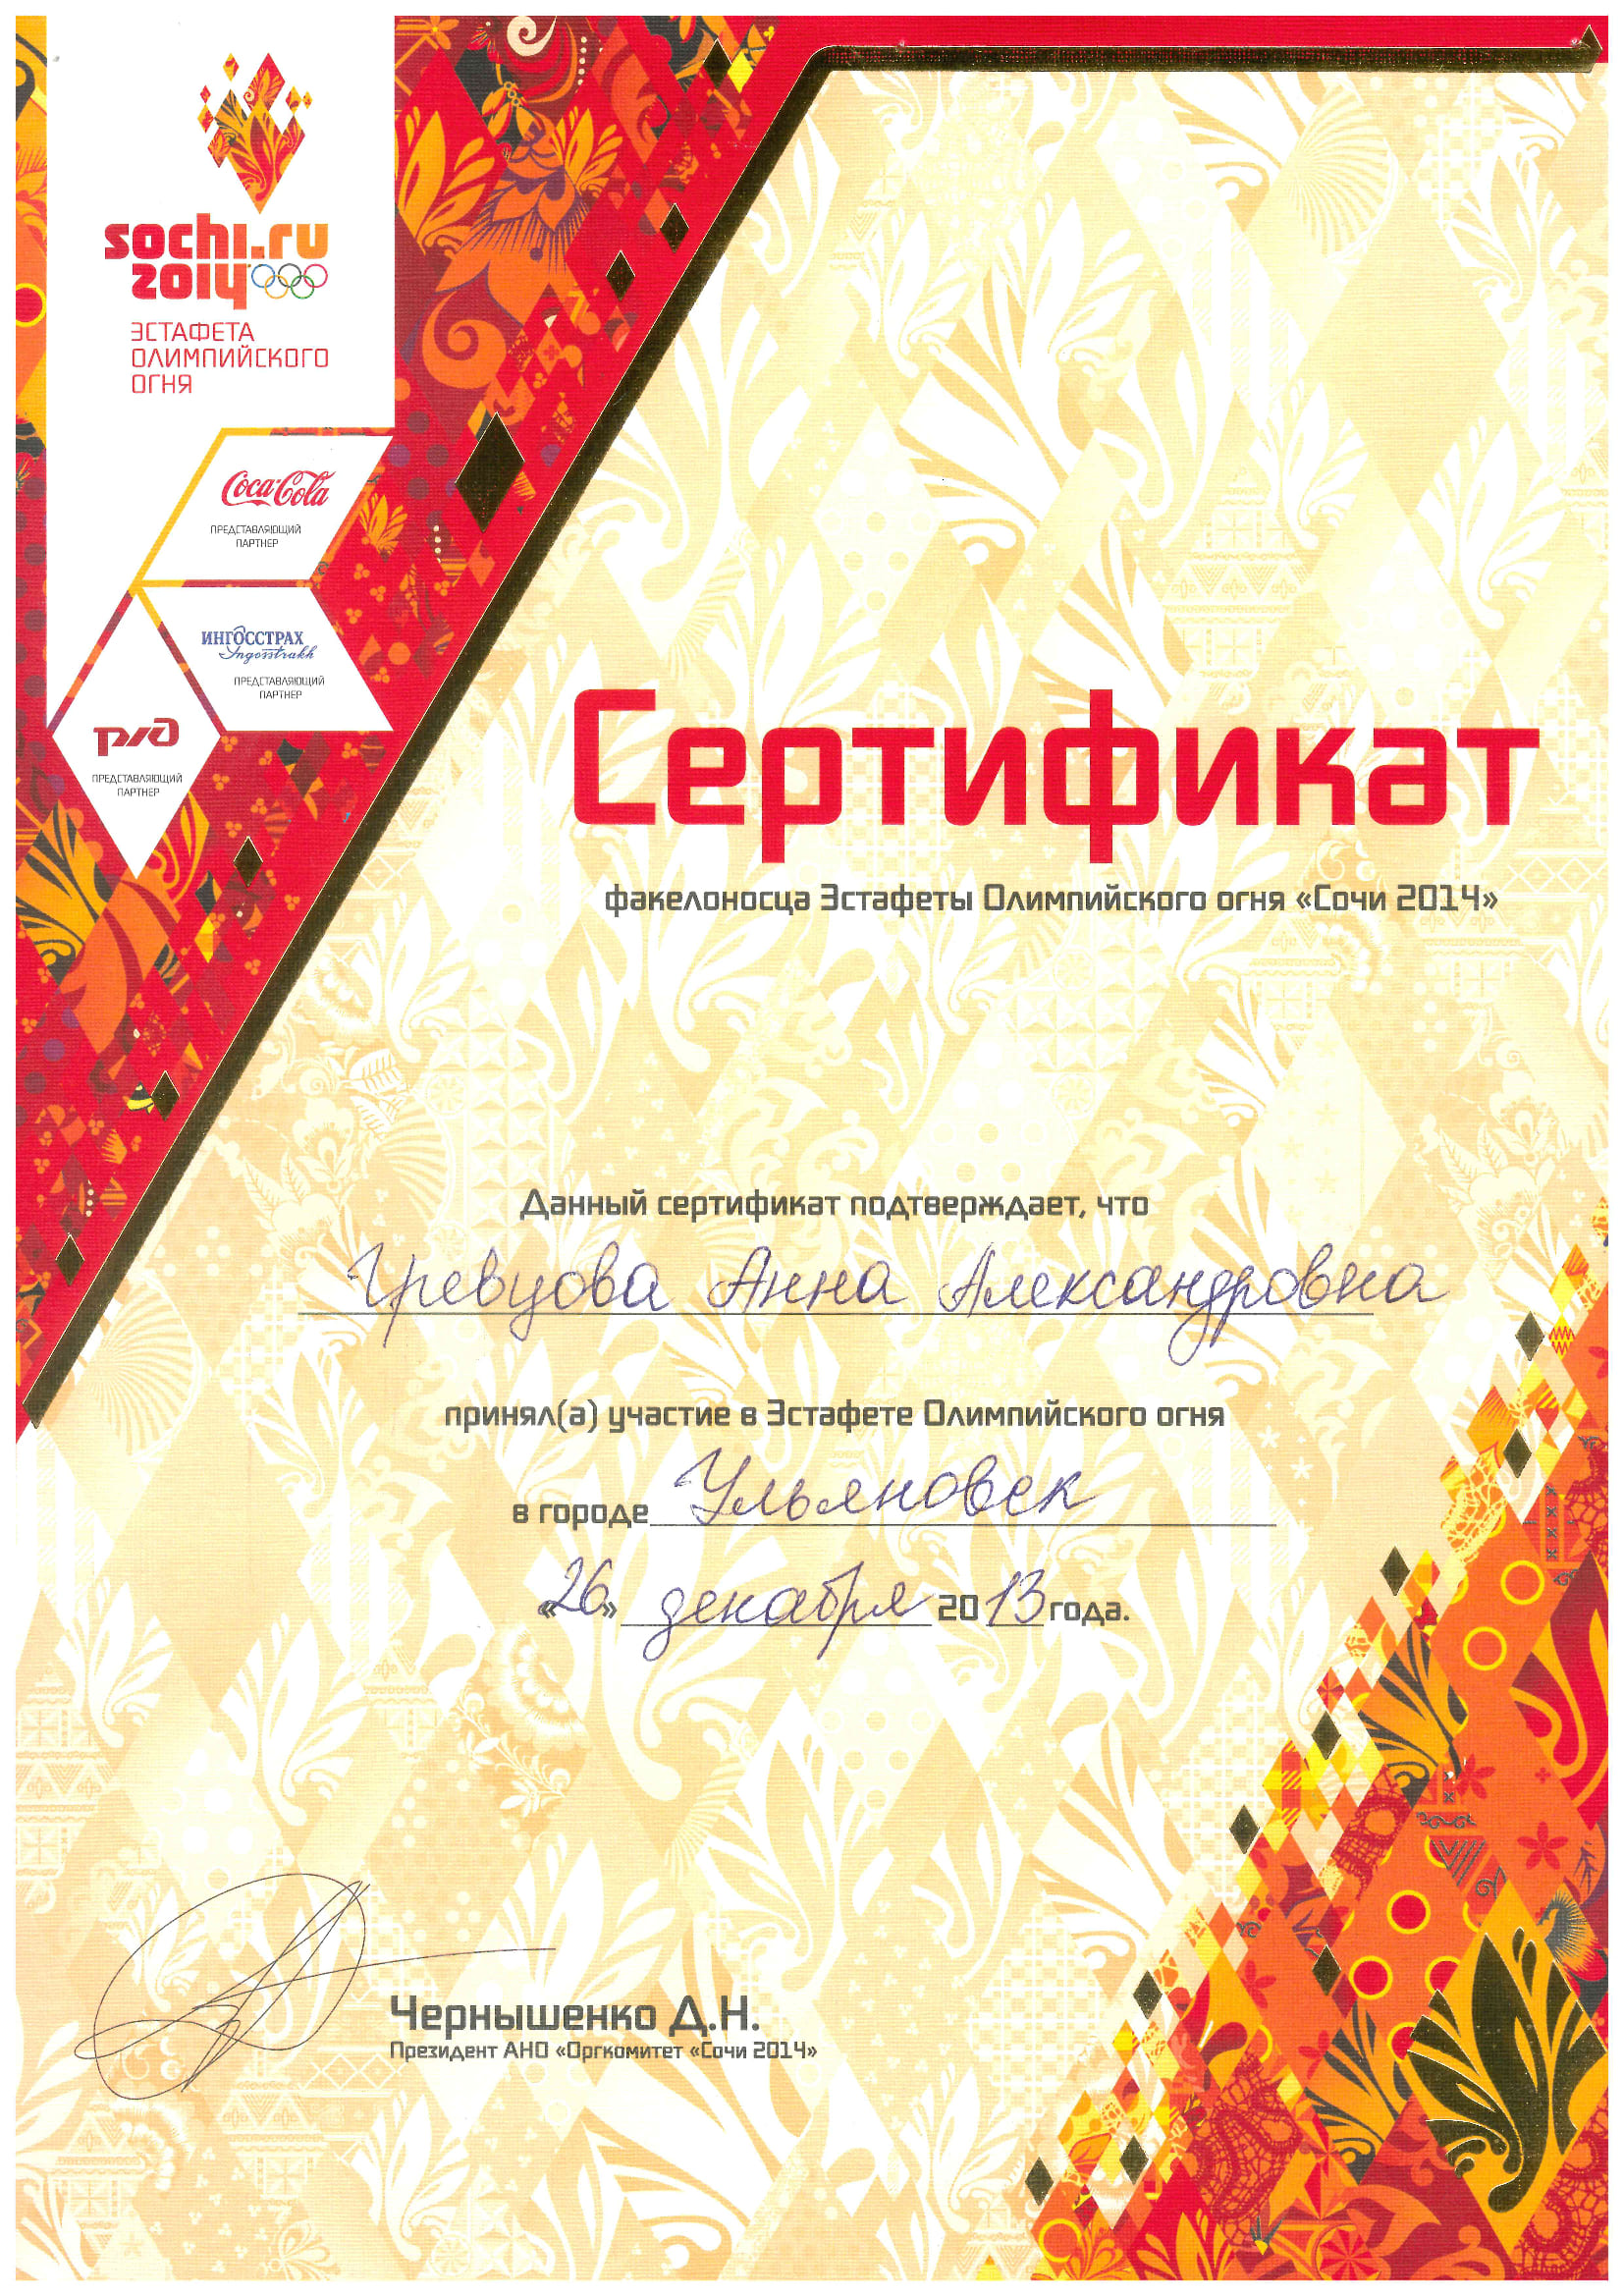 Сертификат факелоносца Эстафеты Олимпийского огня "Сочи 2014"